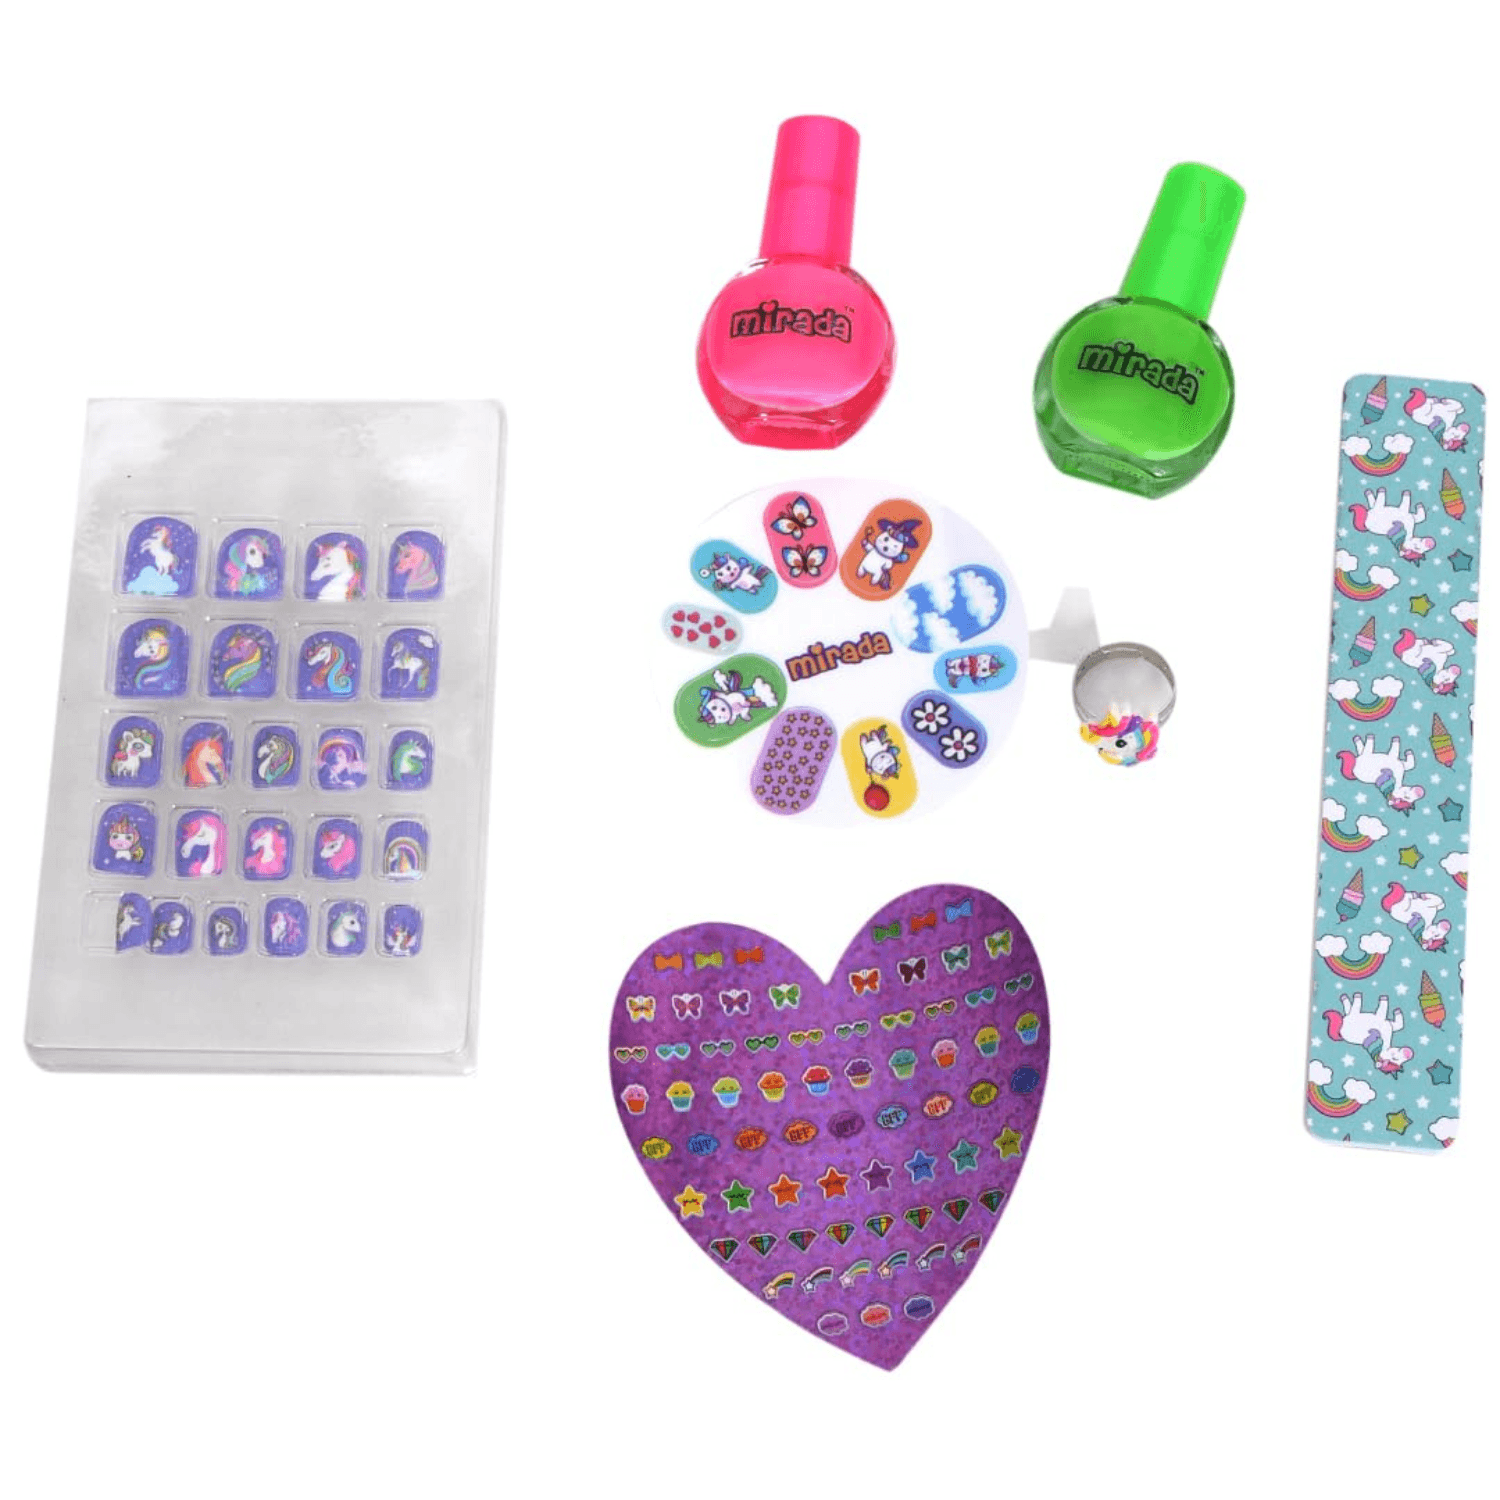 Bolt bee basic nail art kit combo - nail extension kit- polygel kit-acrylic  kit- 35 item nail art product in full kit. : Amazon.in: Beauty